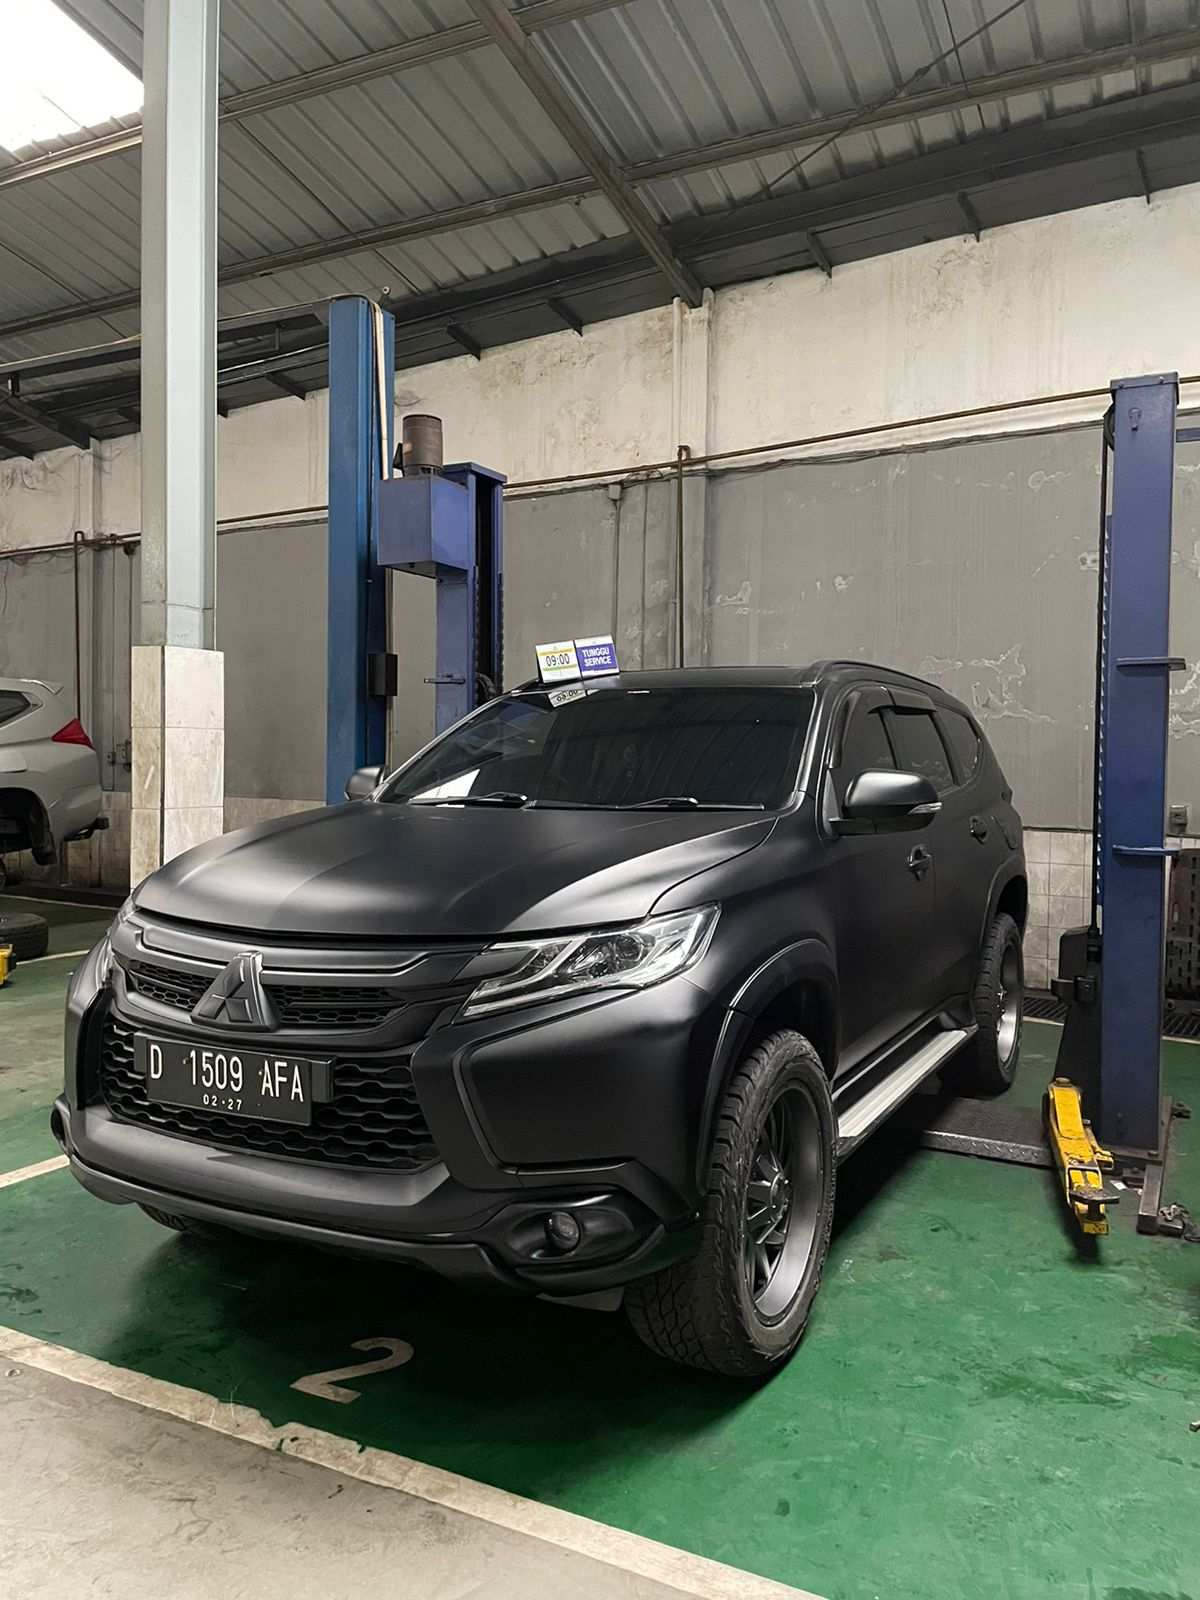 Rental Mobil Avanza Terbaru Di Bogor